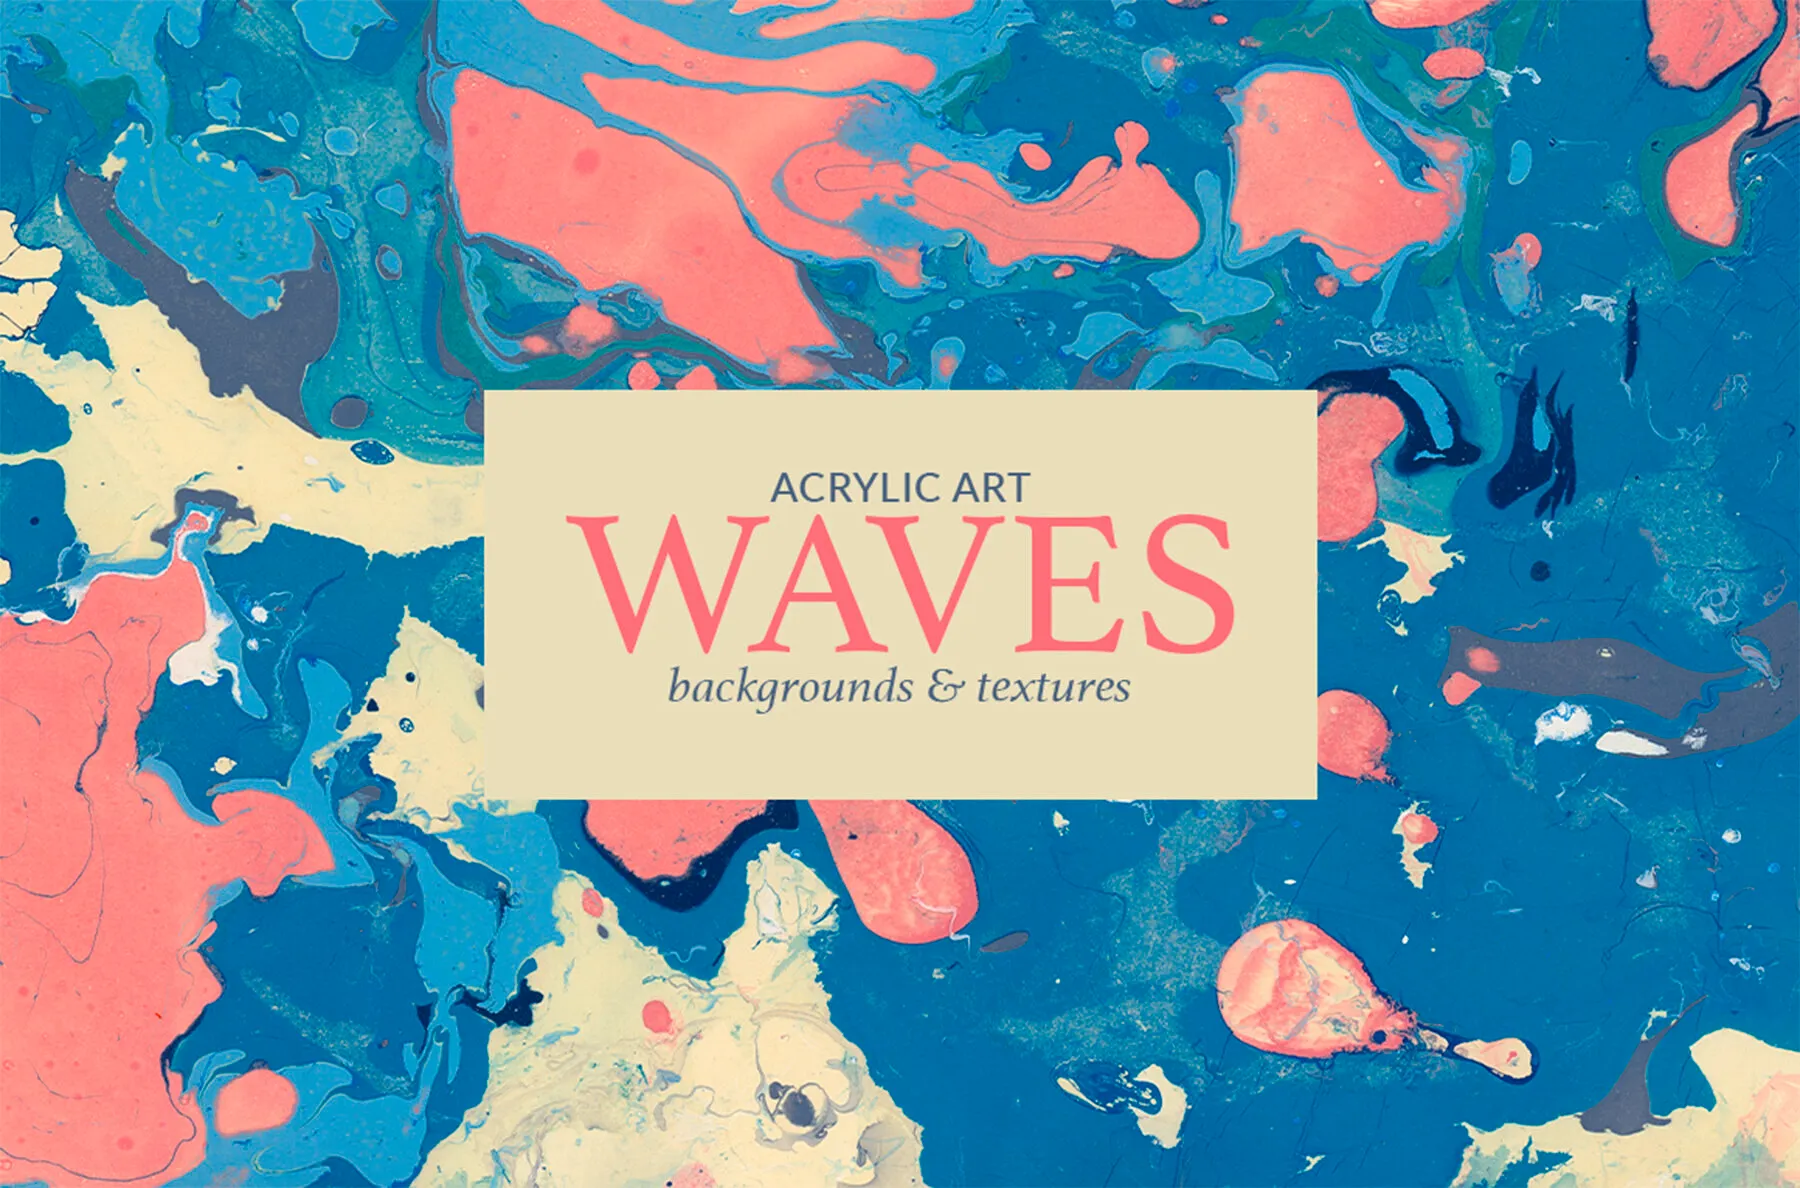 Acrylic art Waves